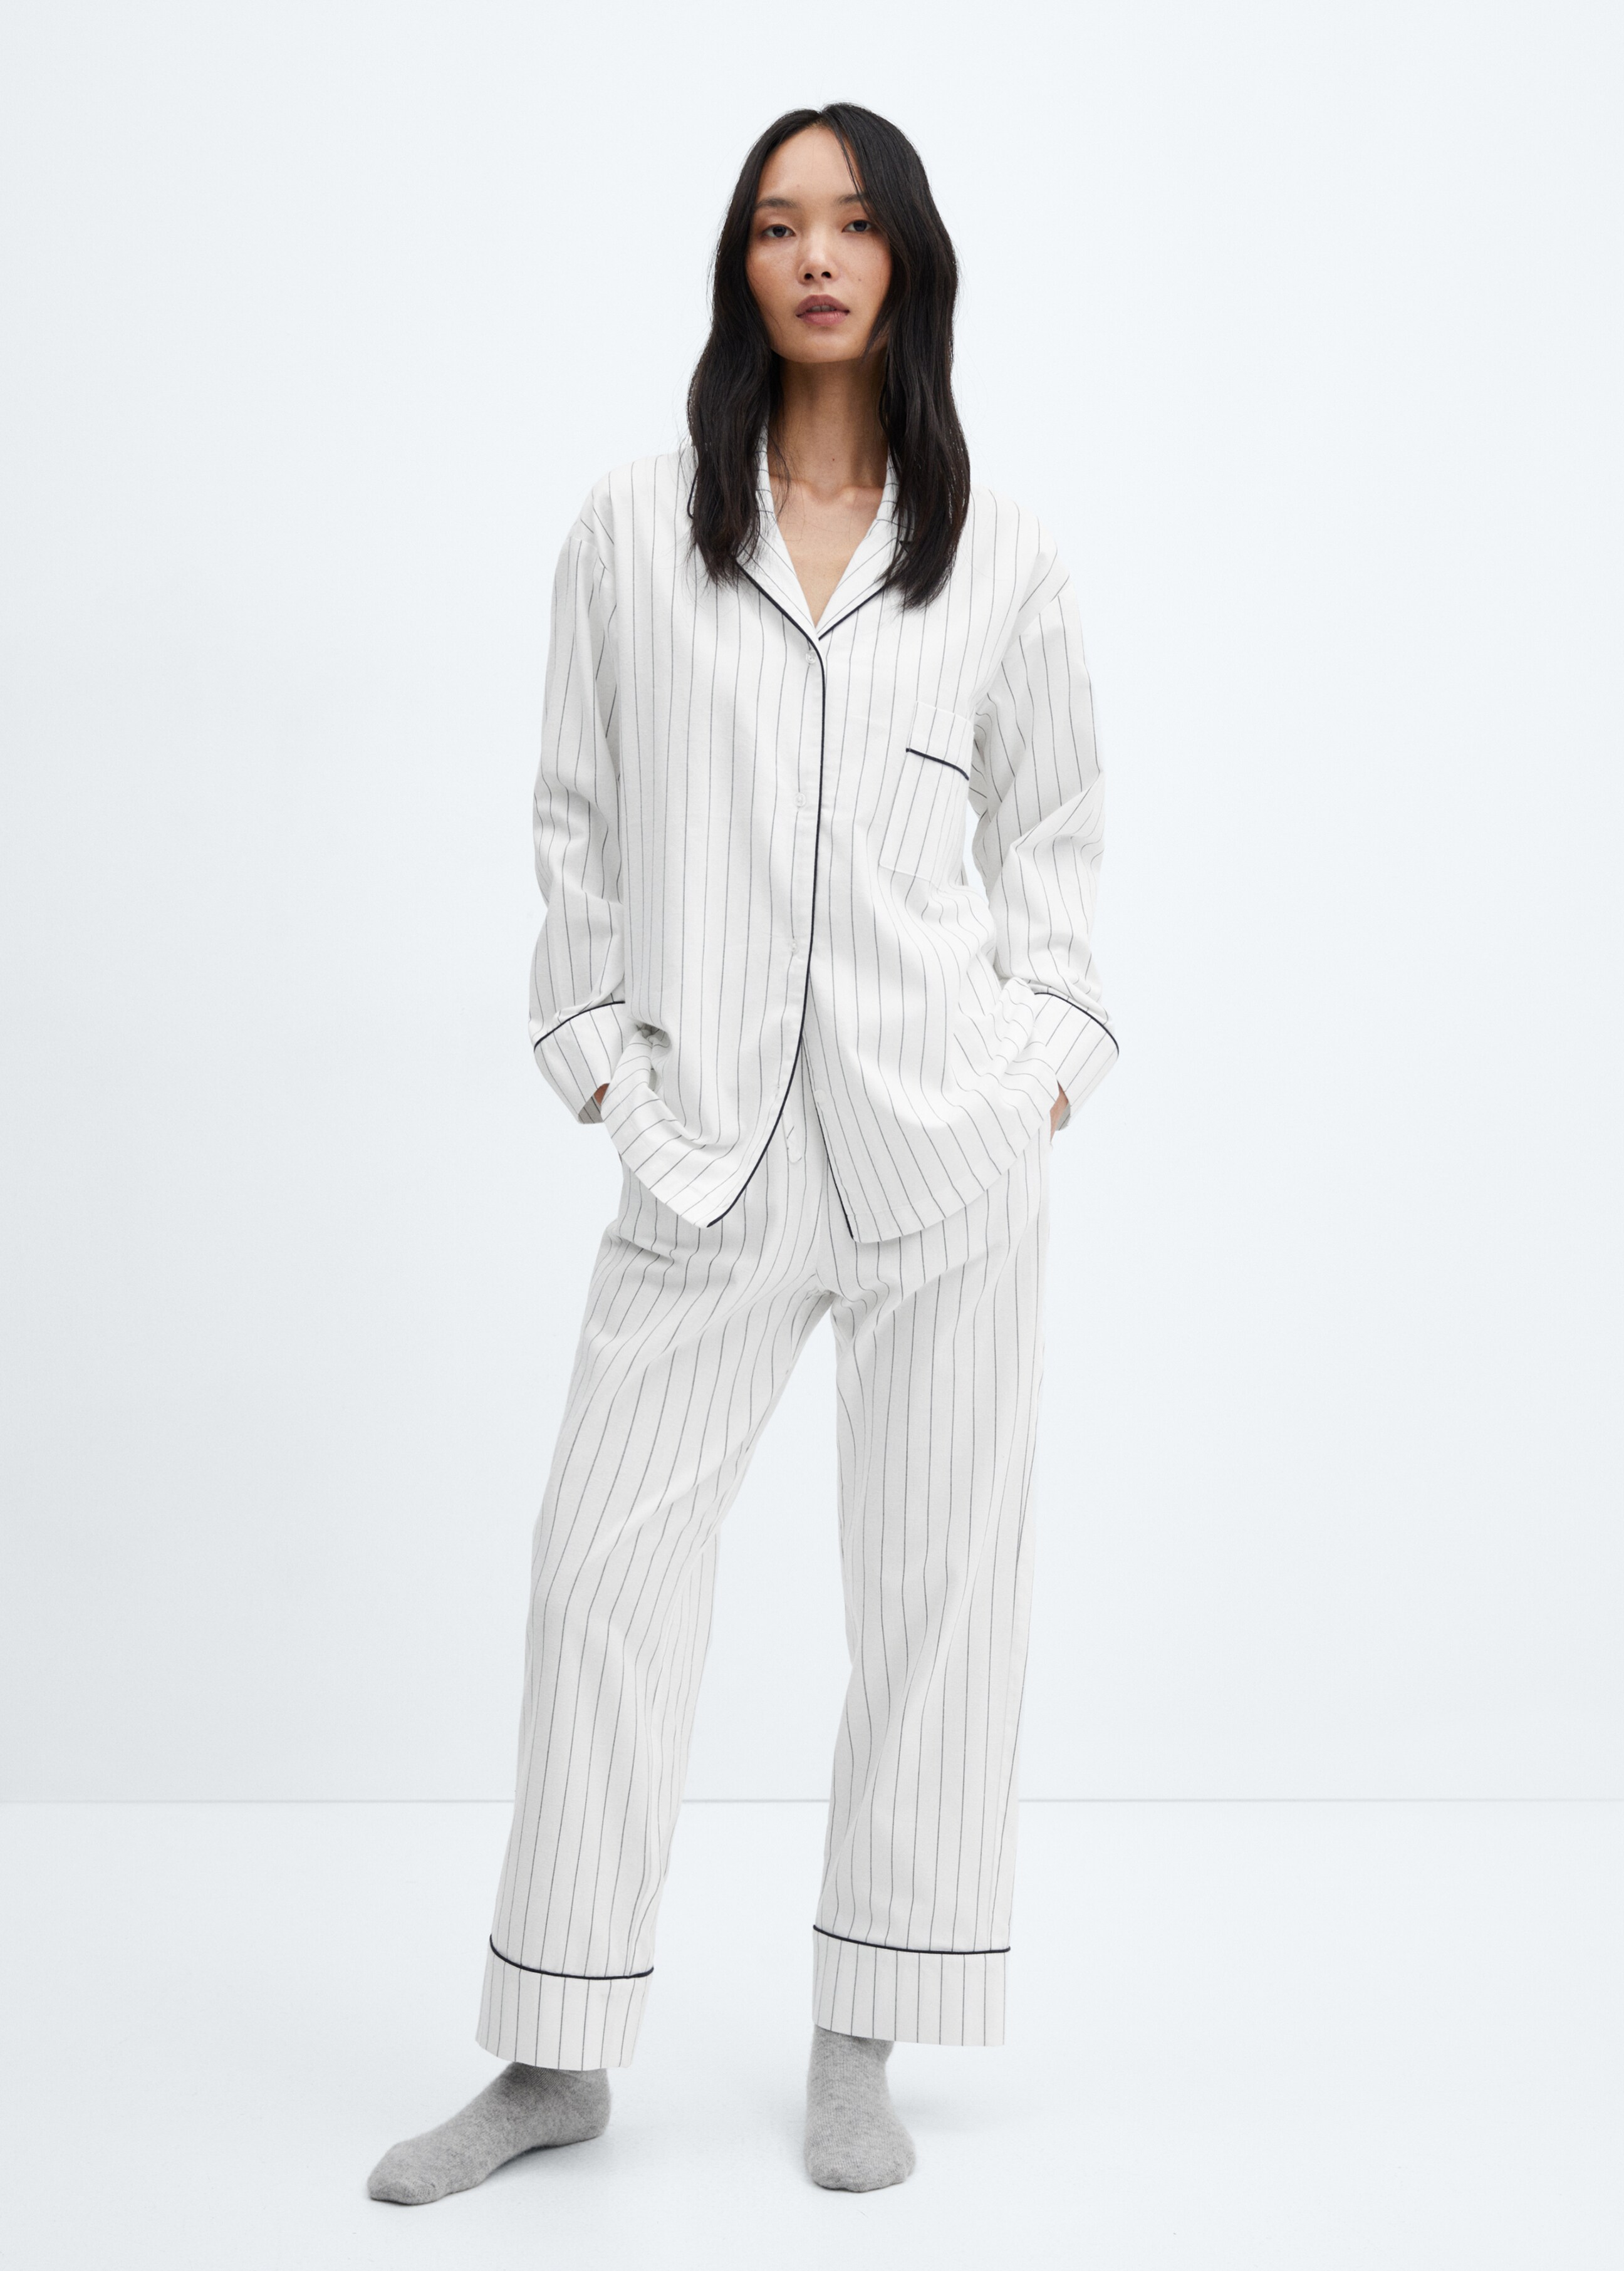 Pantalón pijama rayas - Plano general